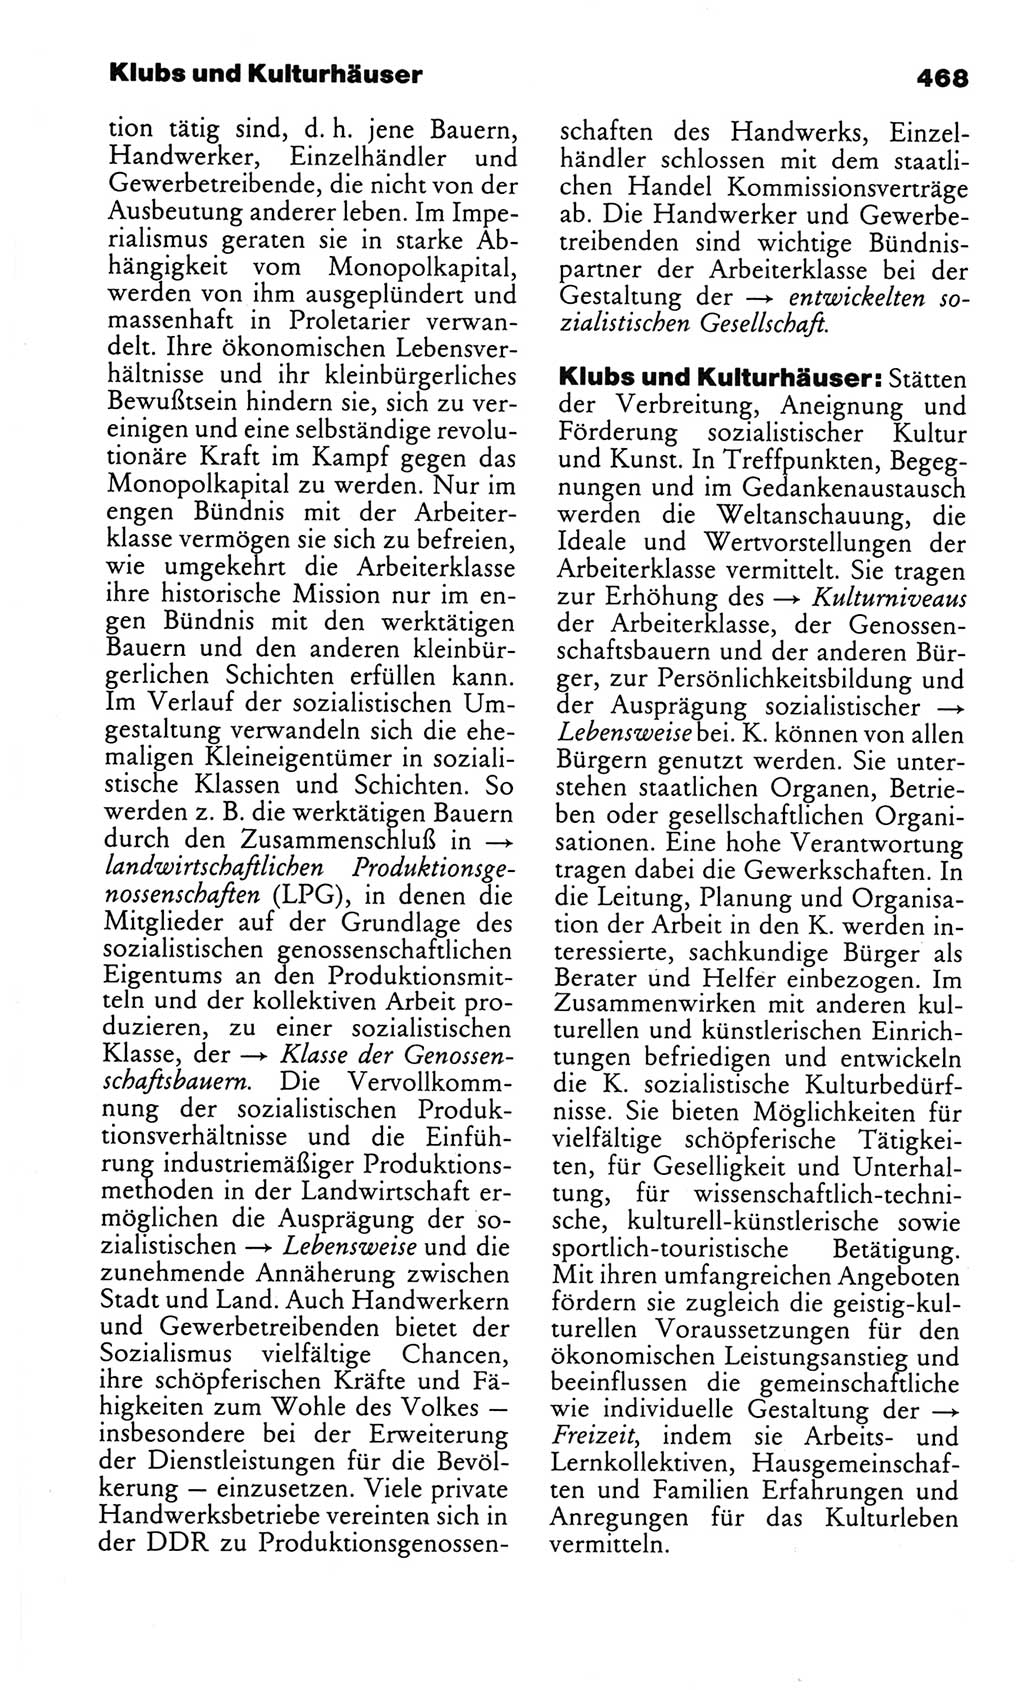 Kleines politisches Wörterbuch [Deutsche Demokratische Republik (DDR)] 1986, Seite 468 (Kl. pol. Wb. DDR 1986, S. 468)